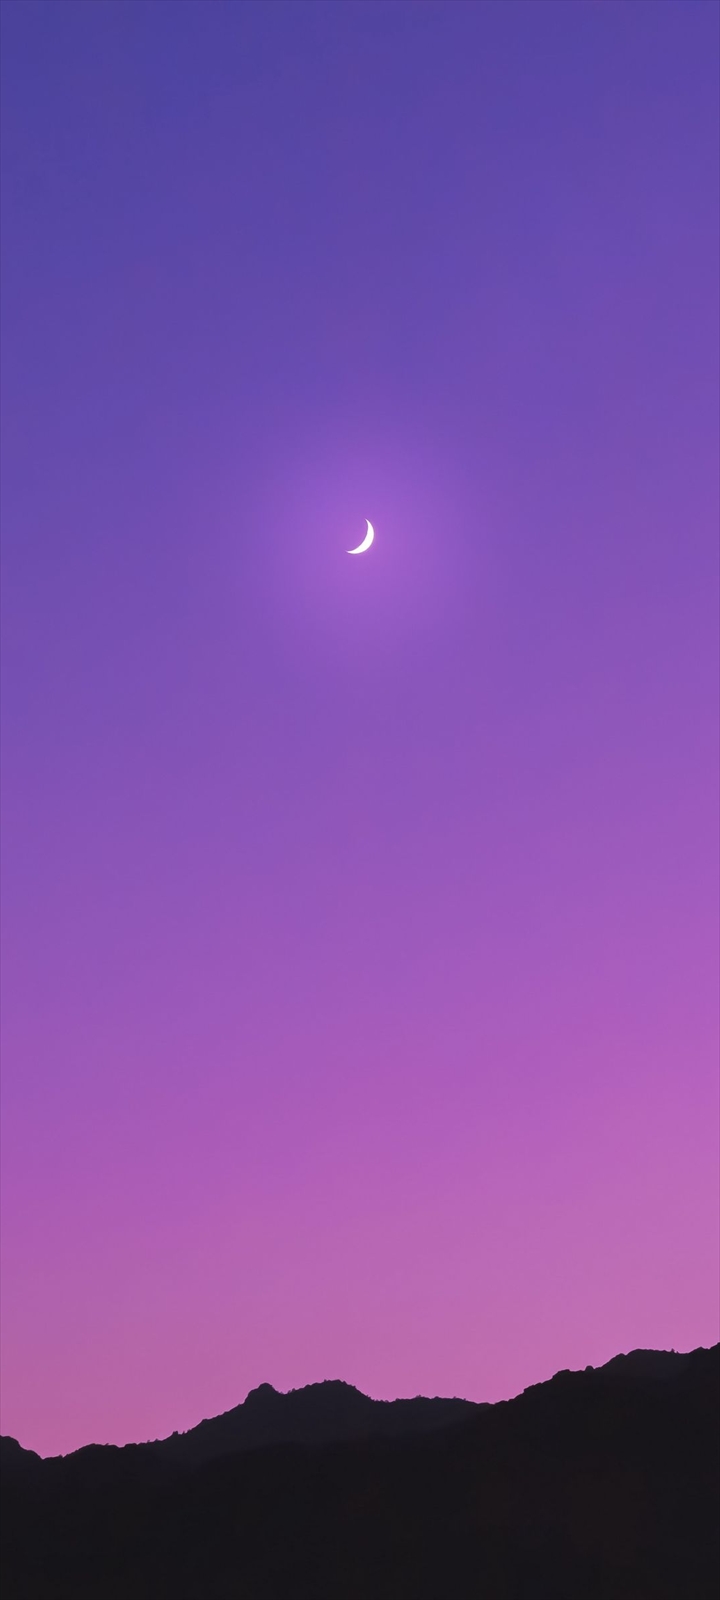 三日月 紫のグラデーションの空 黒い山 Galaxy A32 5g Androidスマホ壁紙 待ち受け スマラン